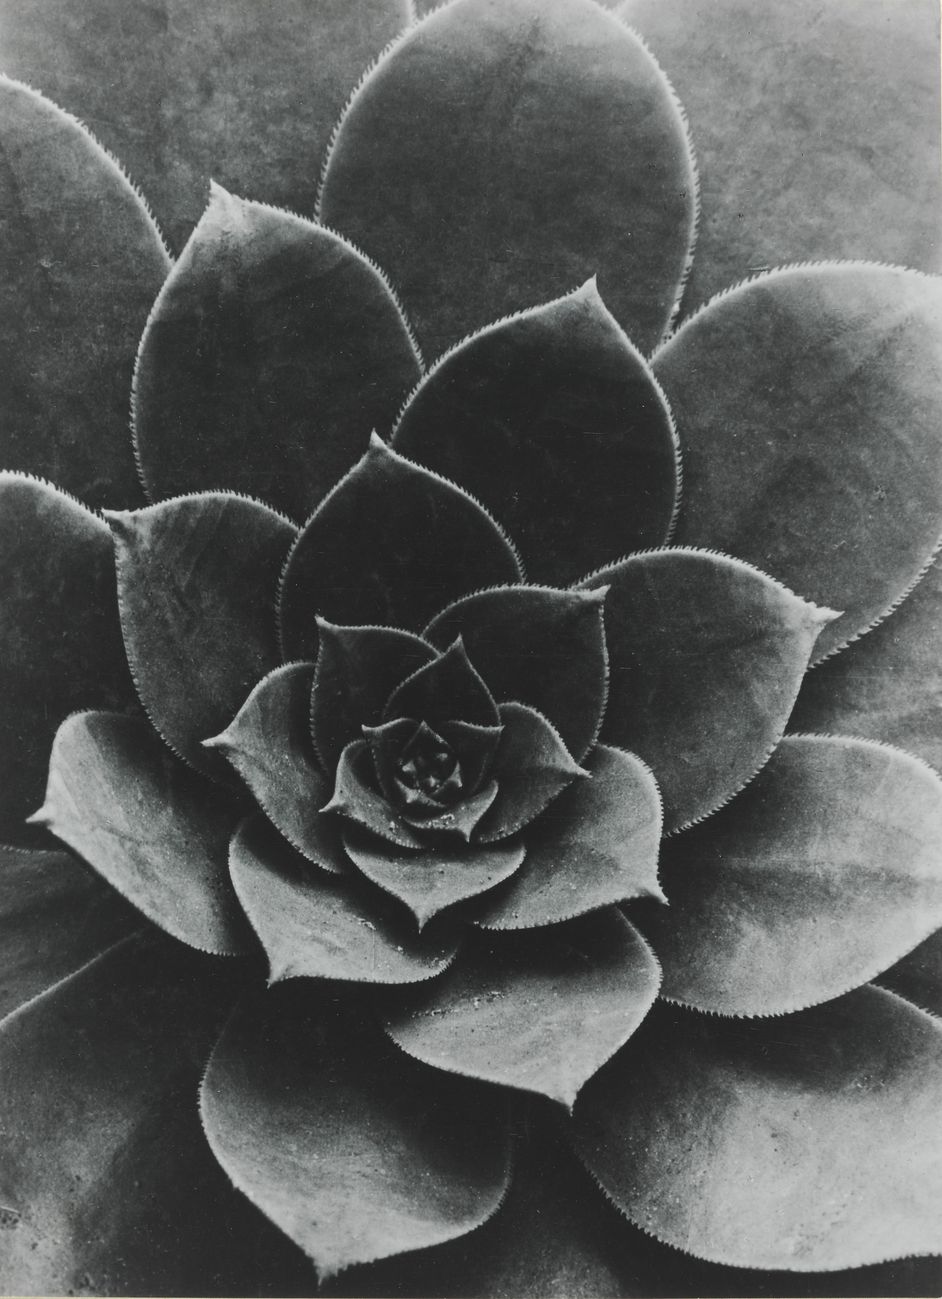 Fotografie von Albert Renger-Patzsch, Silbergelatinepapier, 23,4 x 17 cm